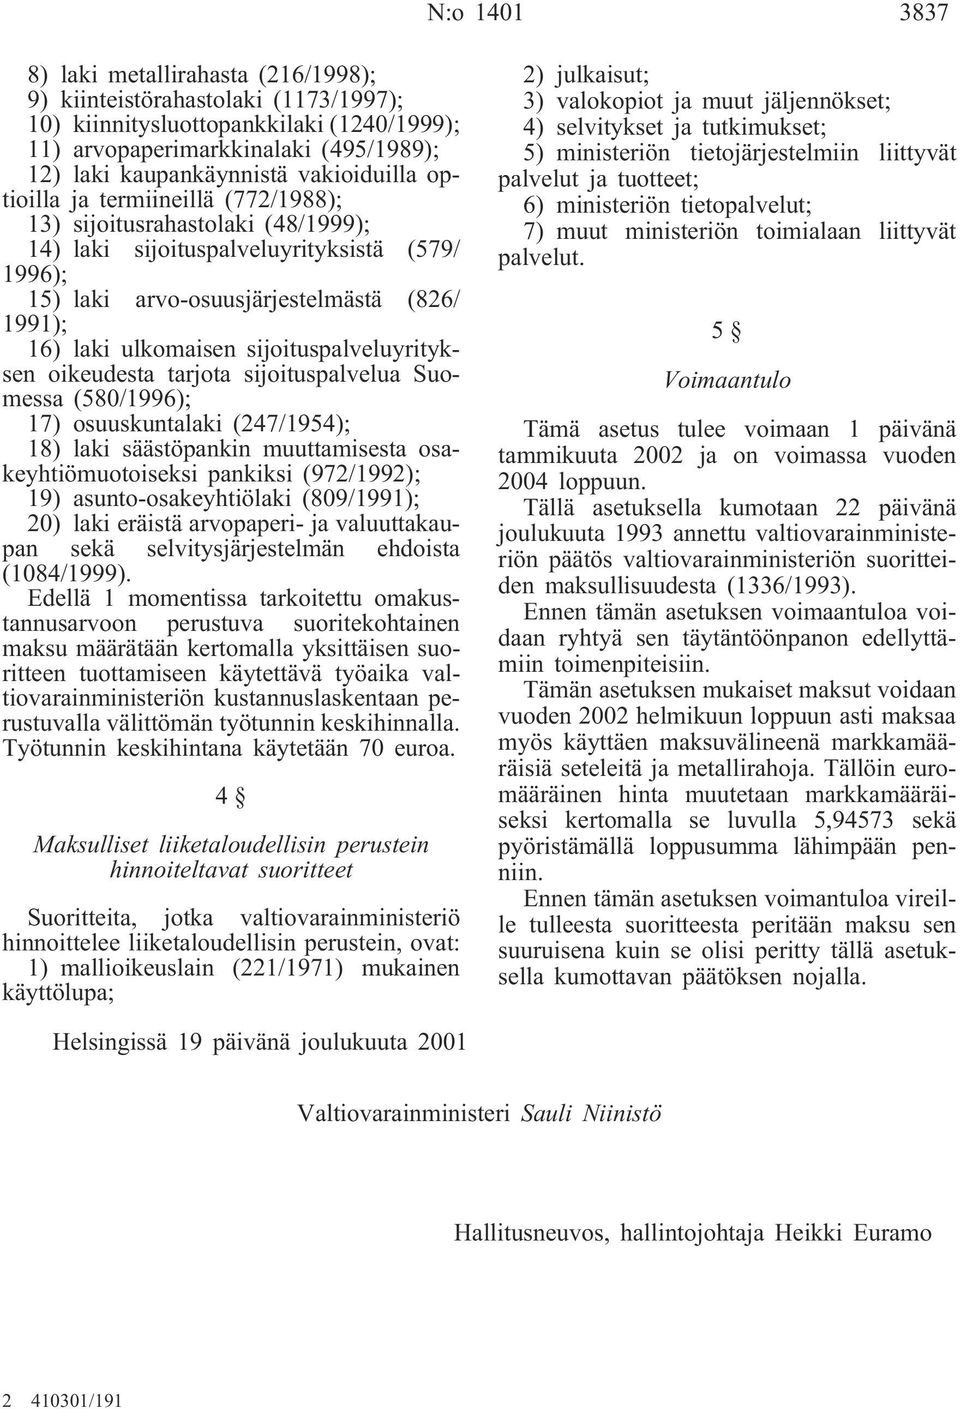 ulkomaisen sijoituspalveluyrityksen oikeudesta tarjota sijoituspalvelua Suomessa (580/1996); 17) osuuskuntalaki (247/1954); 18) laki säästöpankin muuttamisesta osakeyhtiömuotoiseksi pankiksi